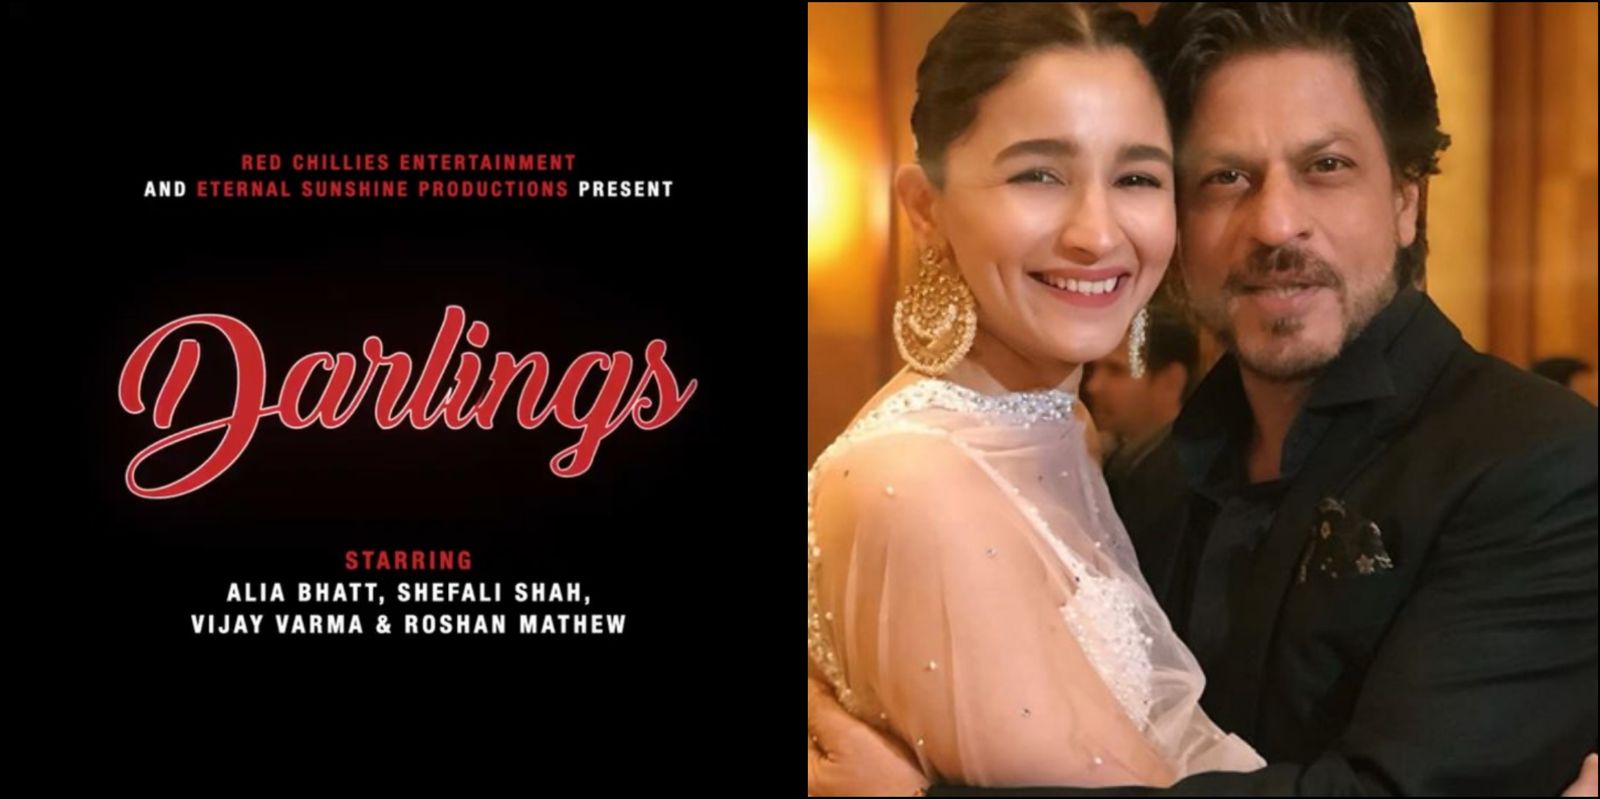 शाहरुख खान के प्रोड्क्शन में बनने वाली आलिया भट्ट की फिल्म डार्लिंग्स का ऐलान, पढ़िए डिटेल्स